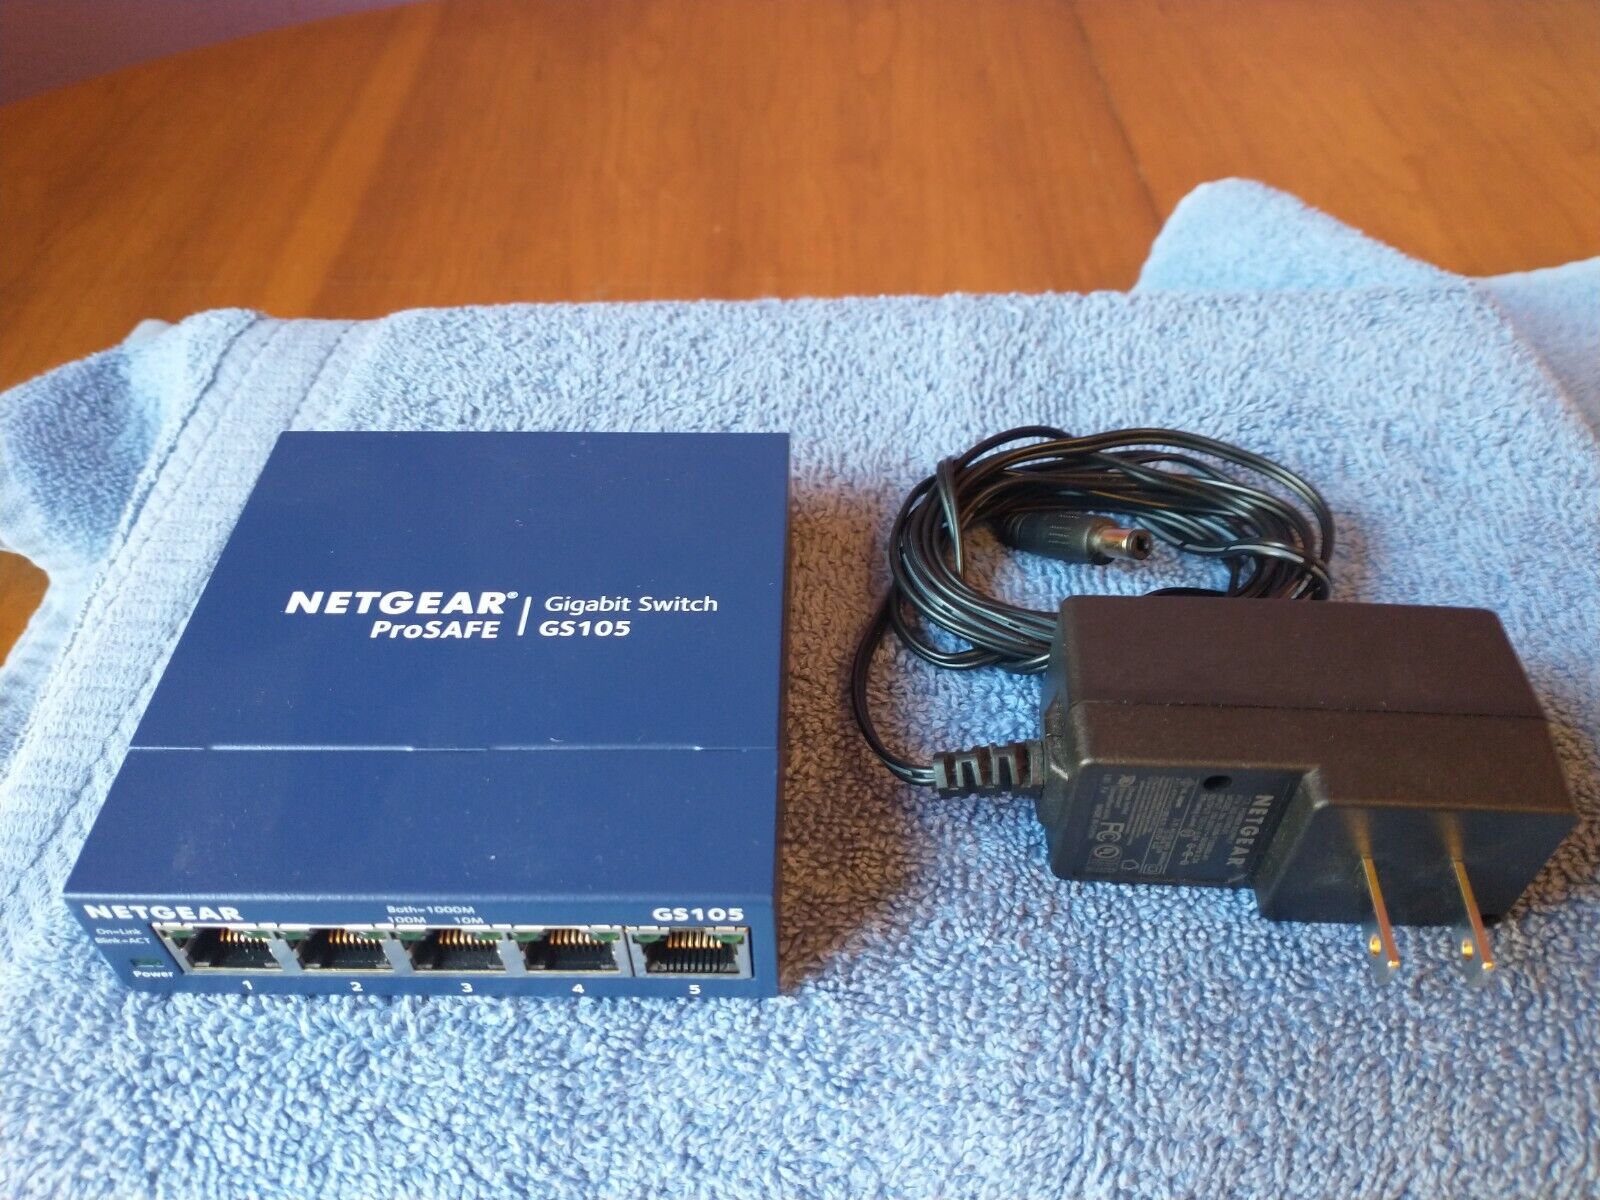 Netgear ProSafe GS105 5-Port Gigabit Switch 